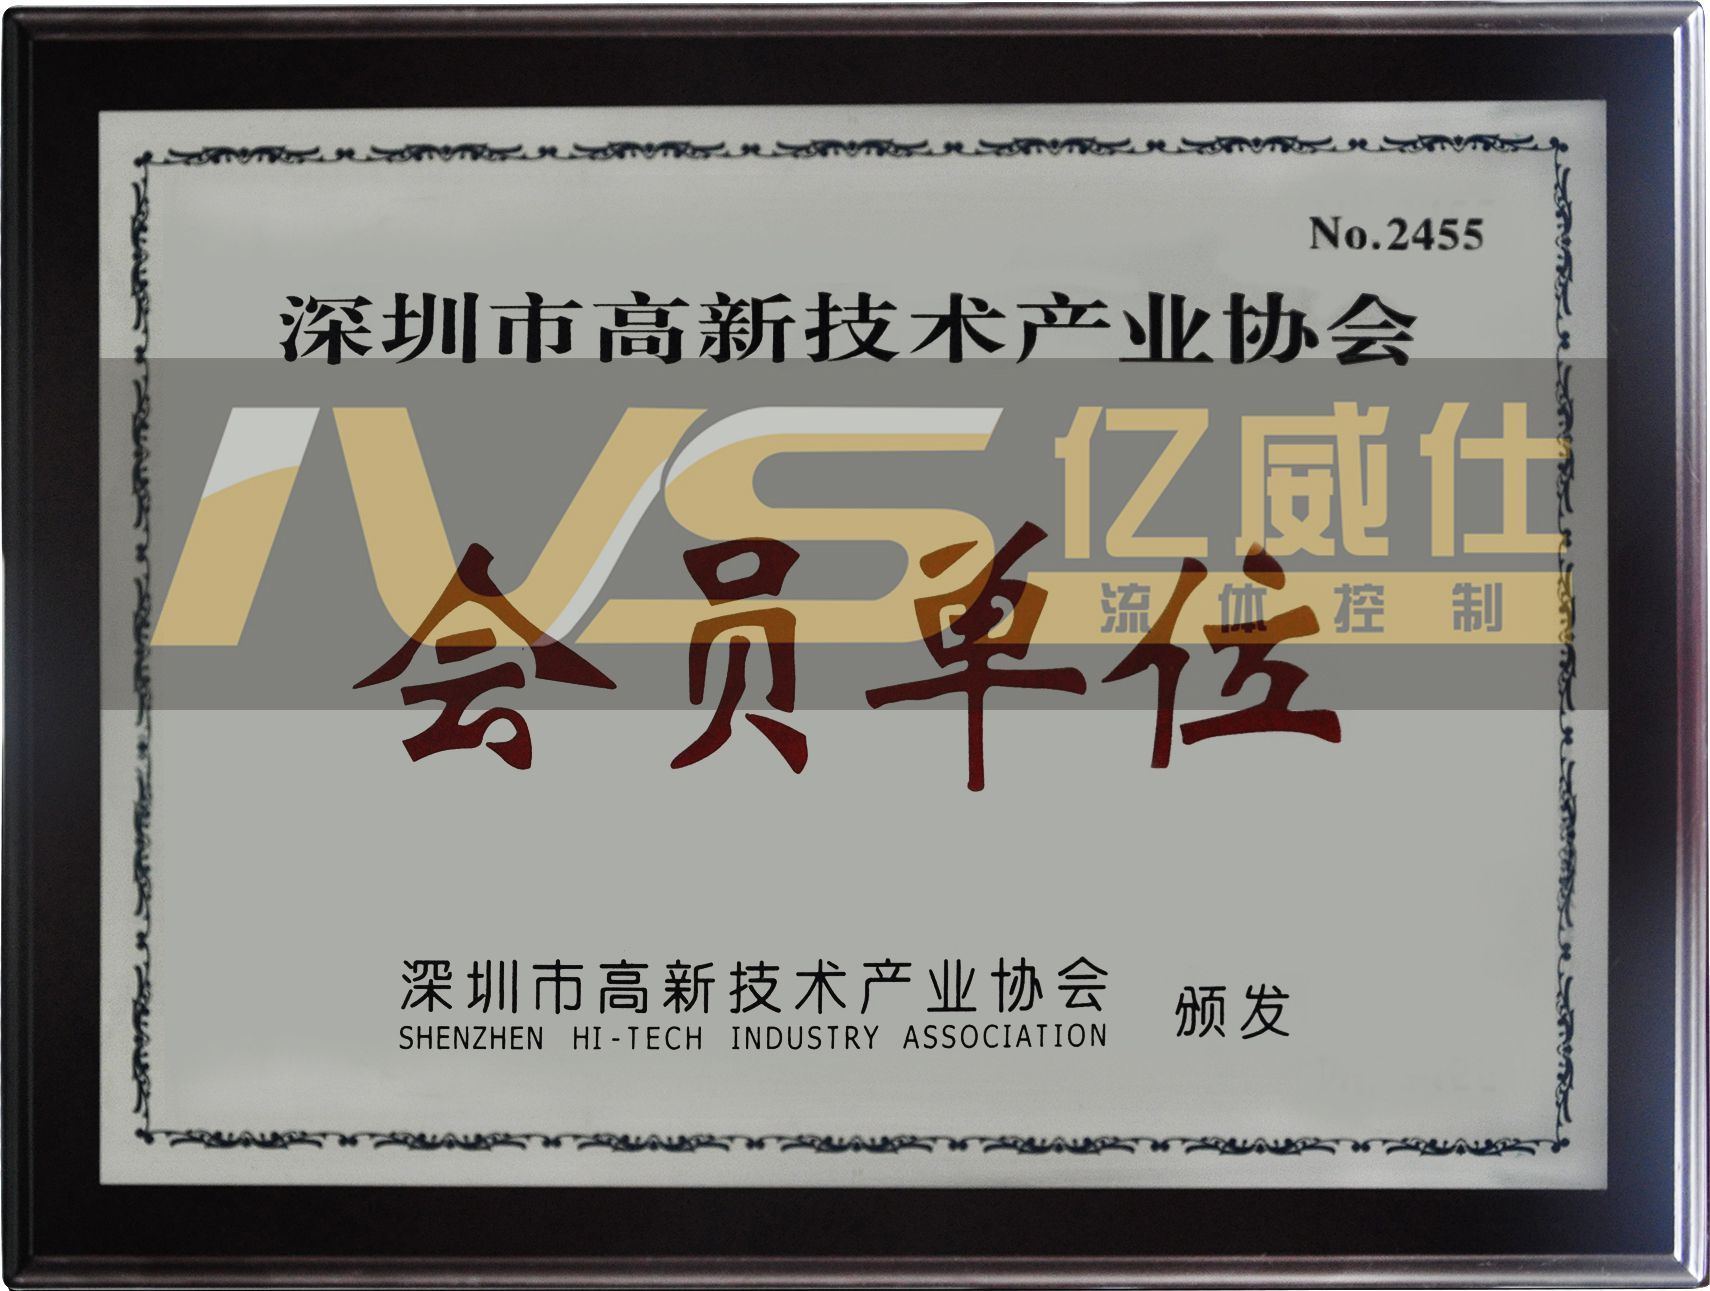 IVS资质证书之深圳市高新技术企业会员单位